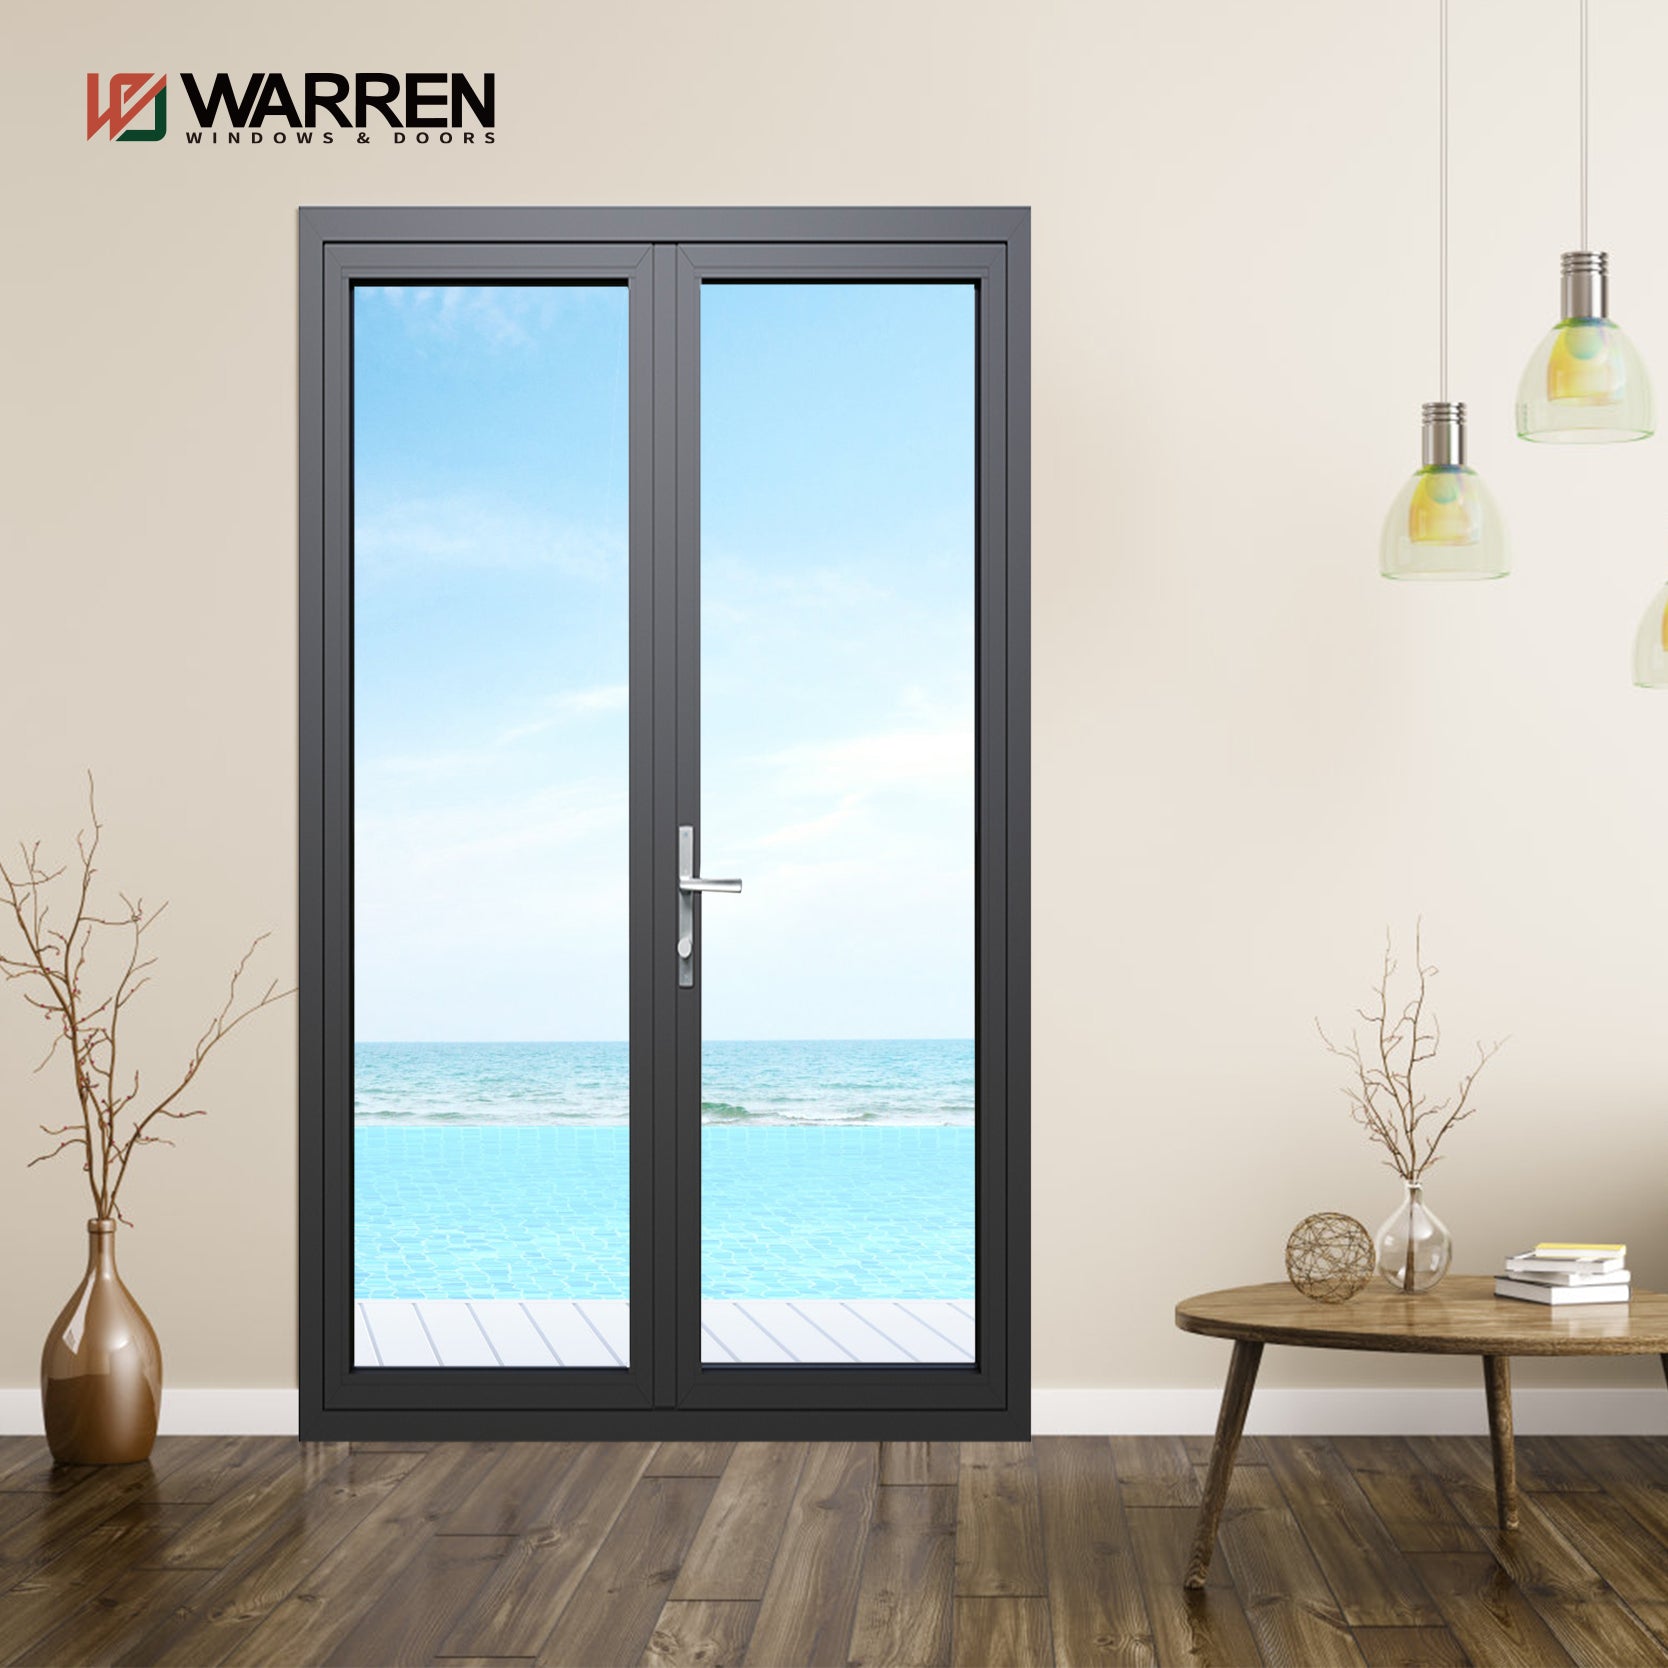 Warren 64x80 French Doors Black Glass Internal Double Doors